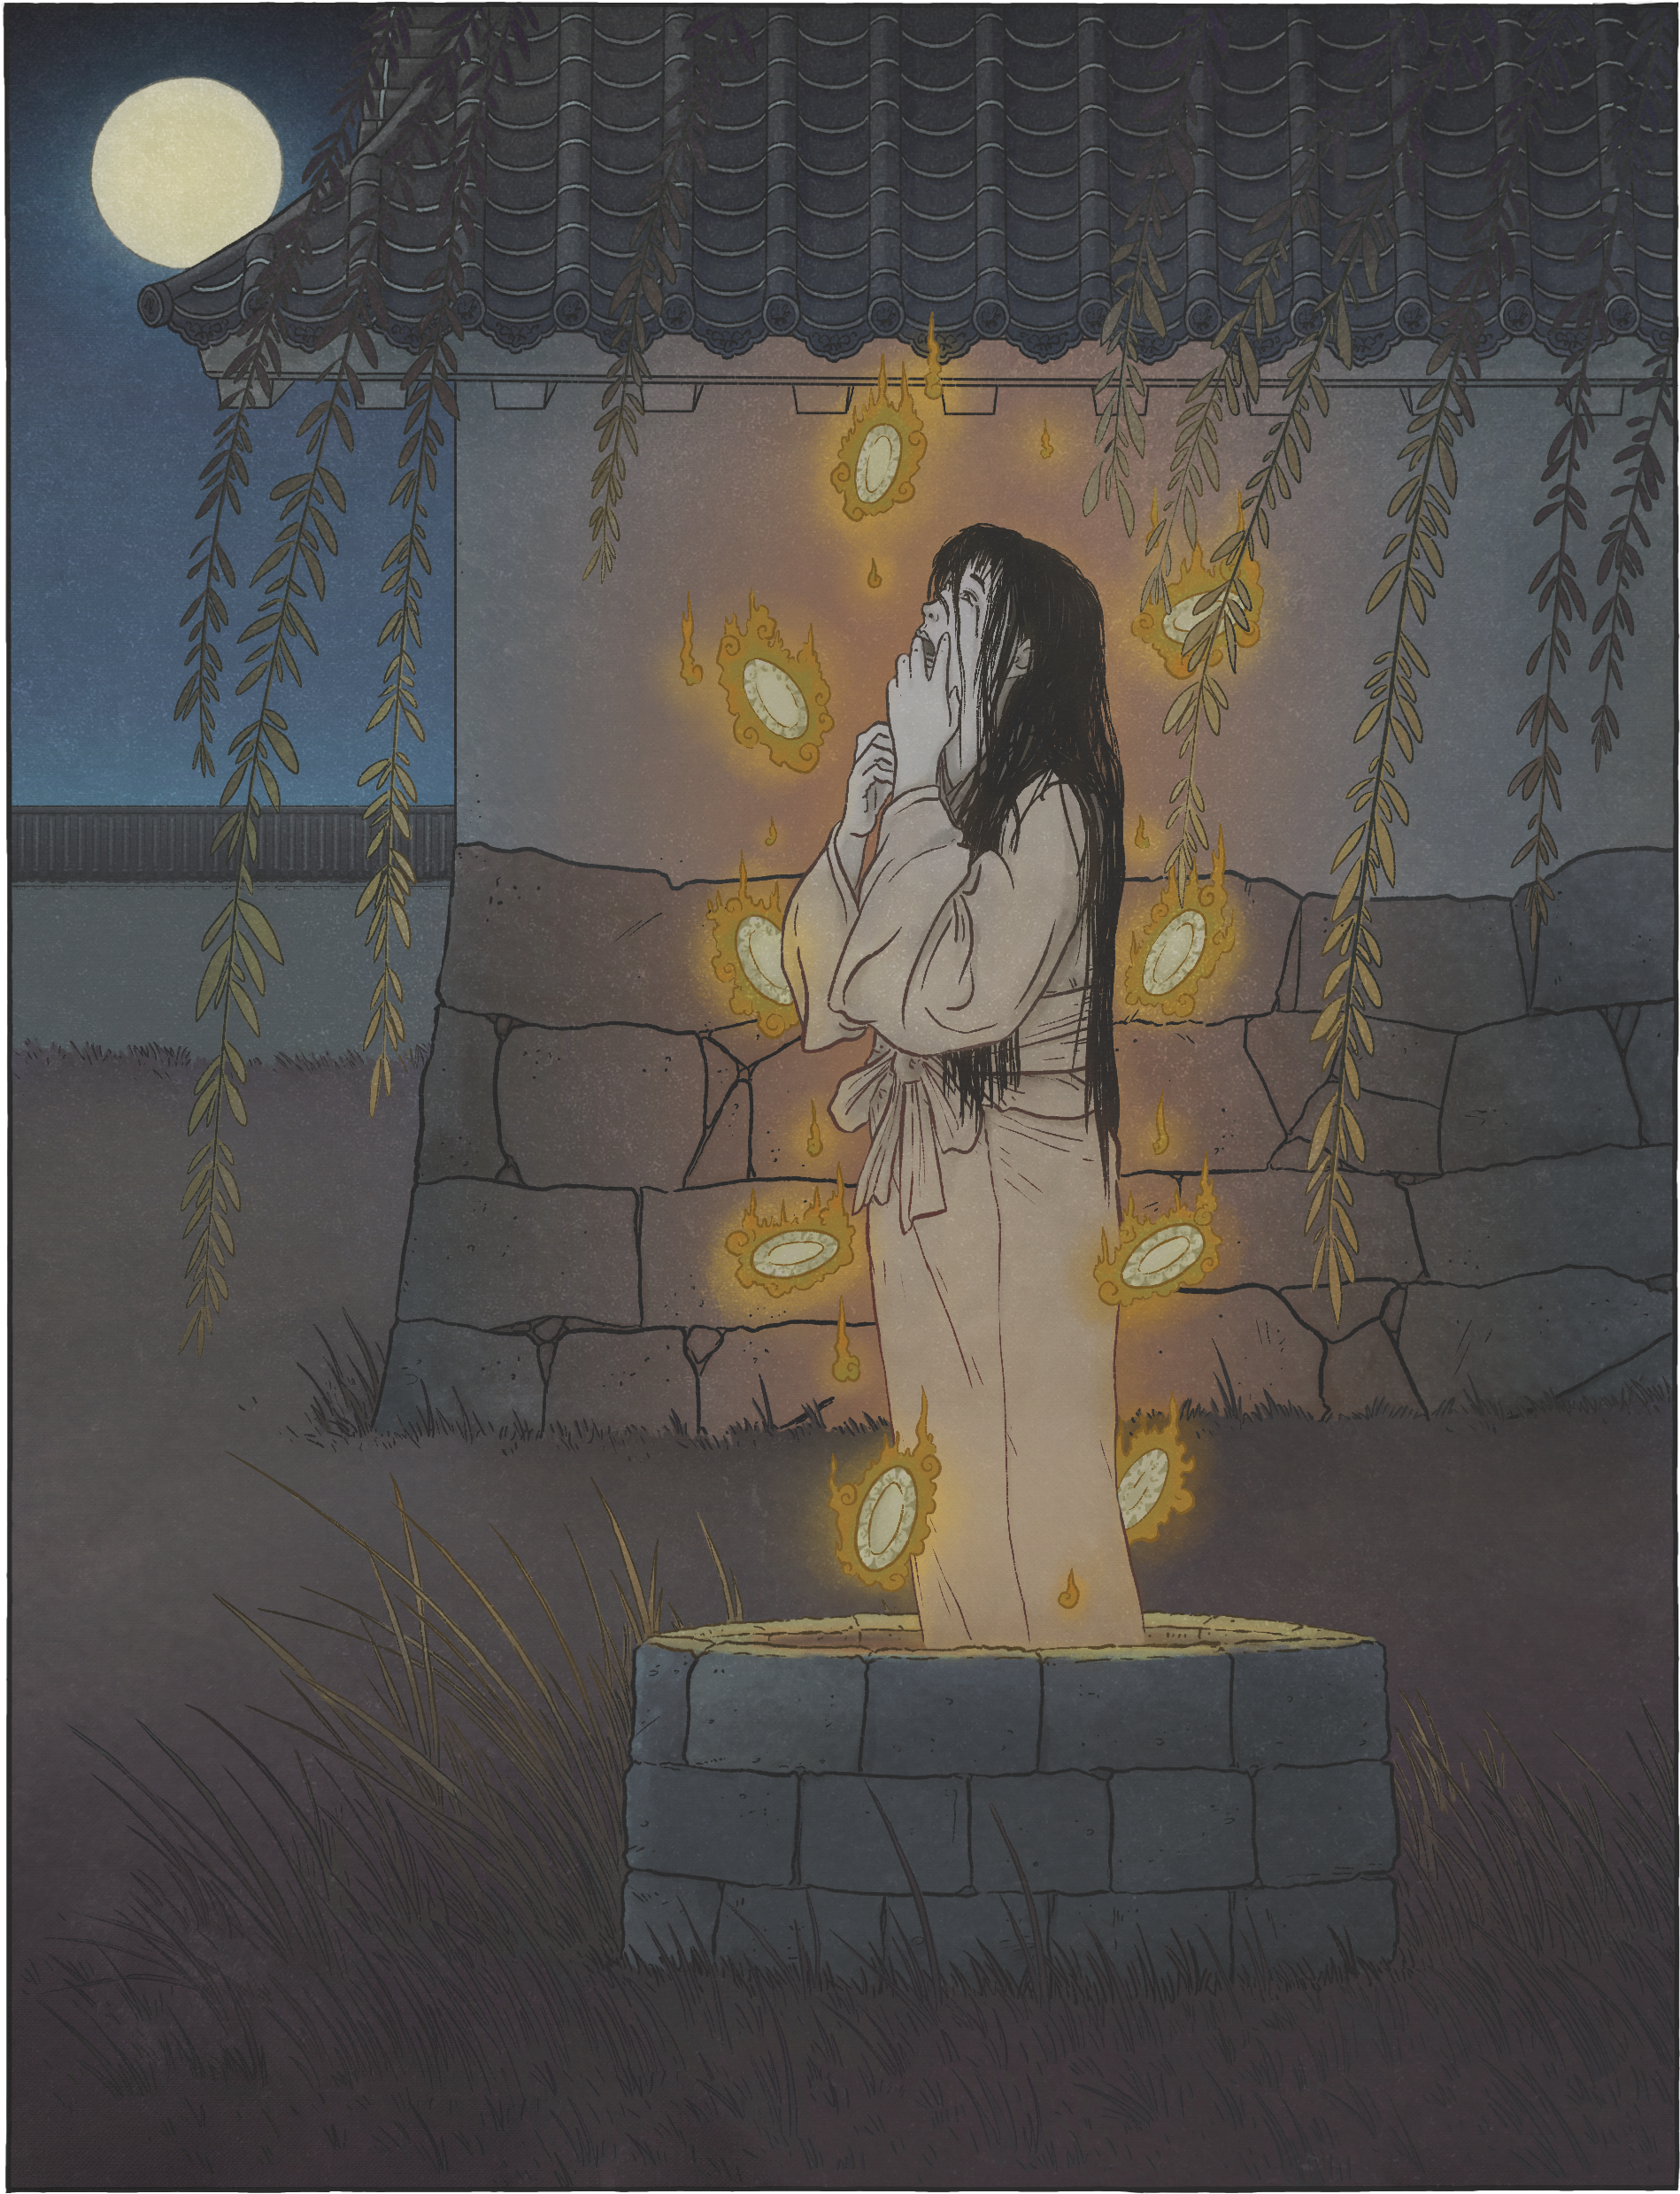 Okiku by Matthew Meyer: figure of a female ghost